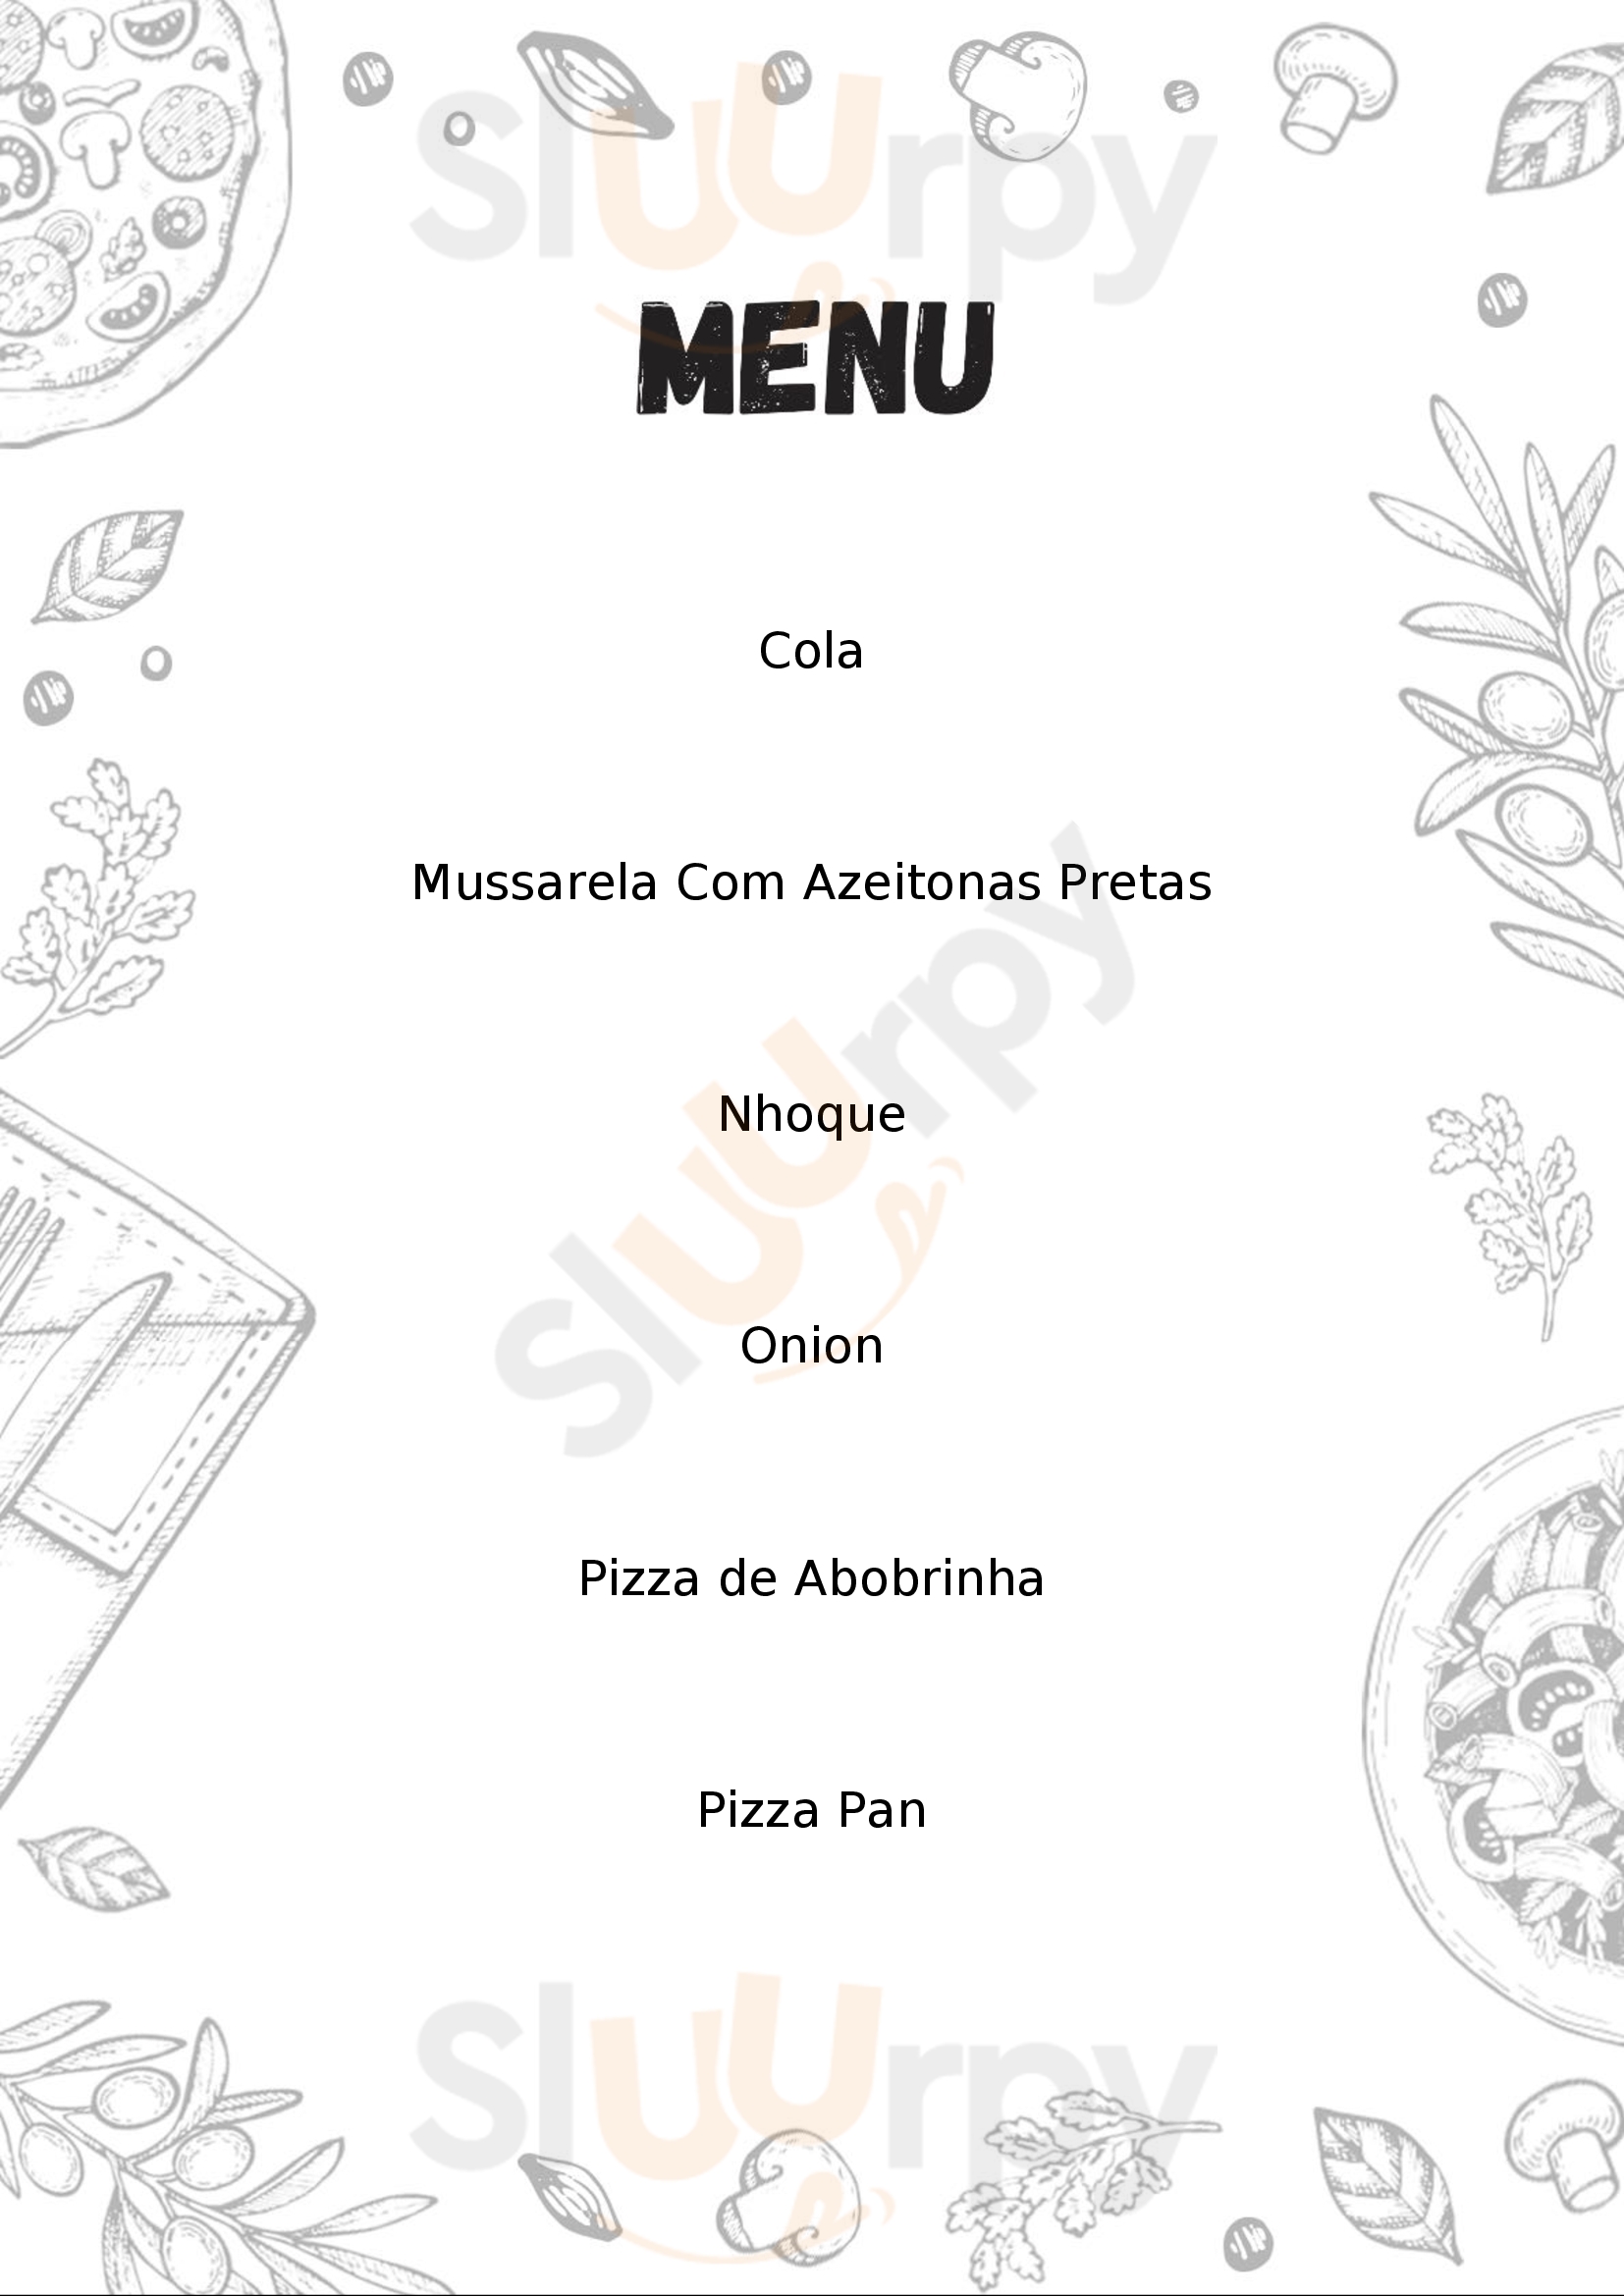 Calciolari - Pizza E Pasta São Paulo Menu - 1